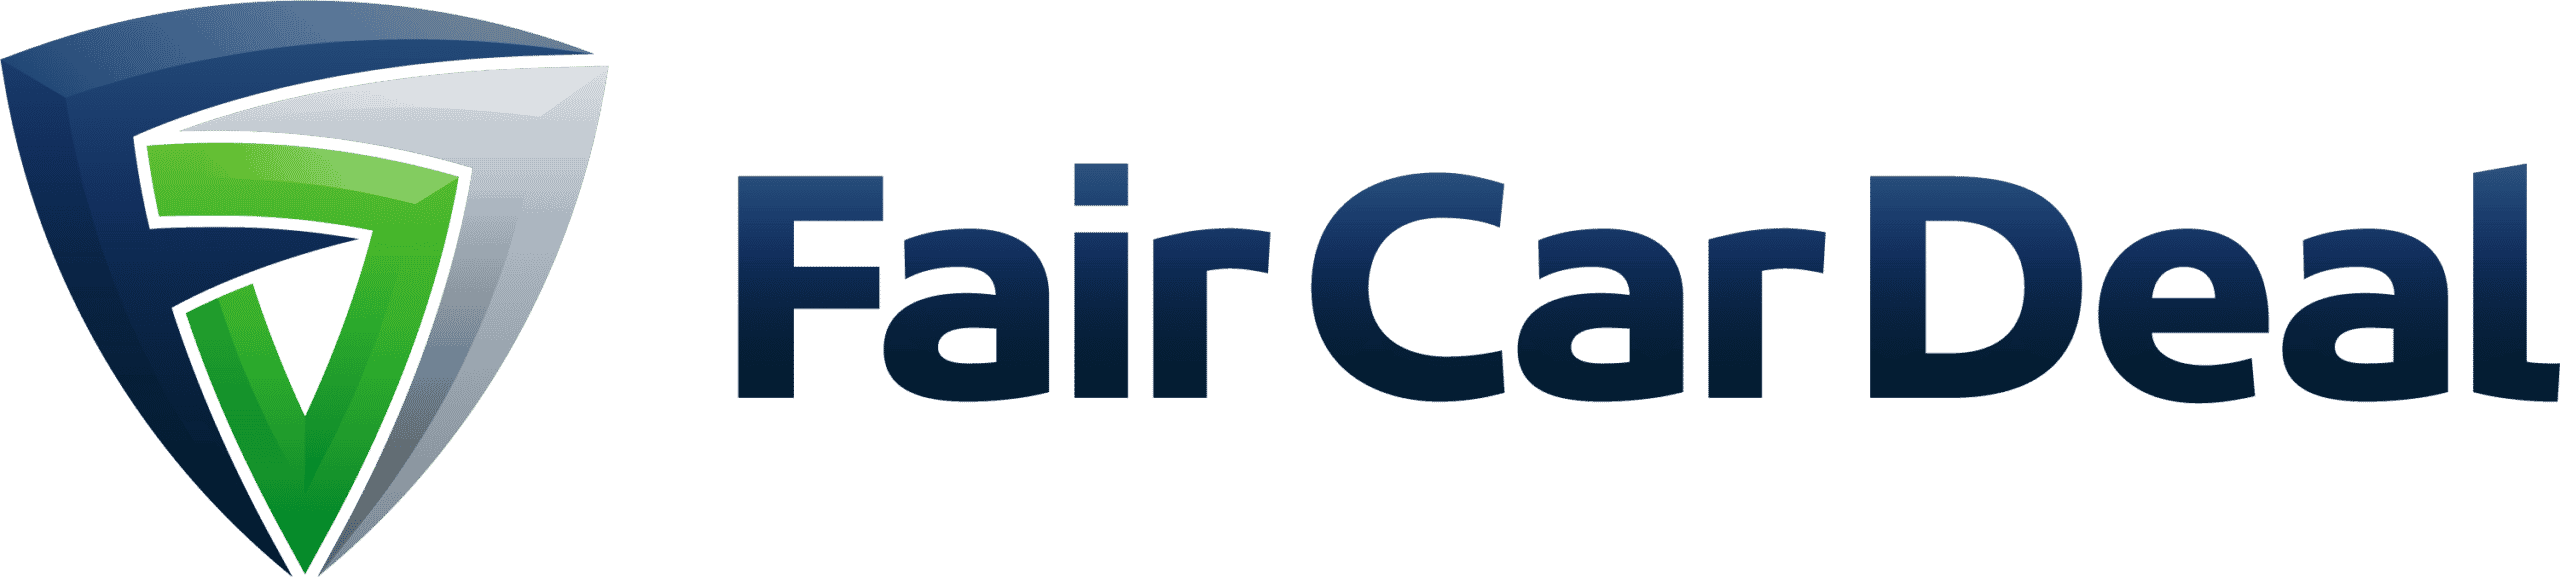 faircardeal logo